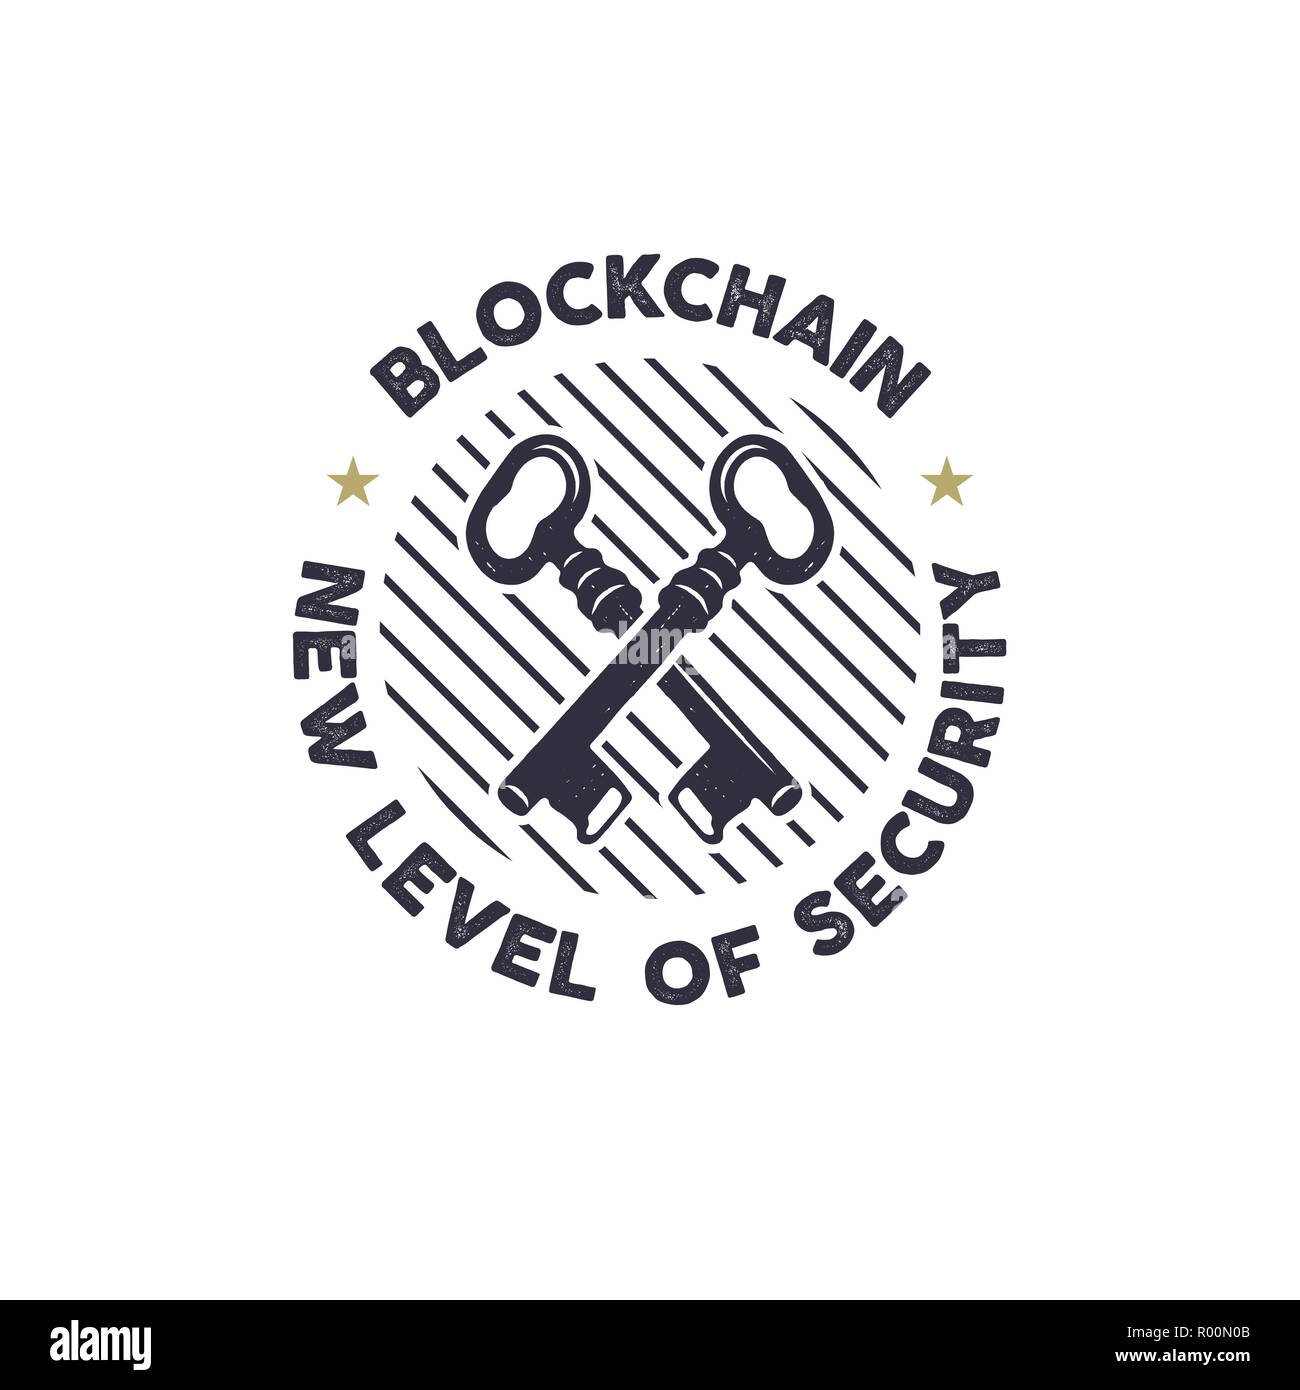 Blockchain - nouveau niveau de sécurité avec des clés concept emblème symbole. Logo actifs numériques. Han vintage design monochrome dessiné. Badge de la technologie. Stock illustration isolé sur fond blanc Banque D'Images